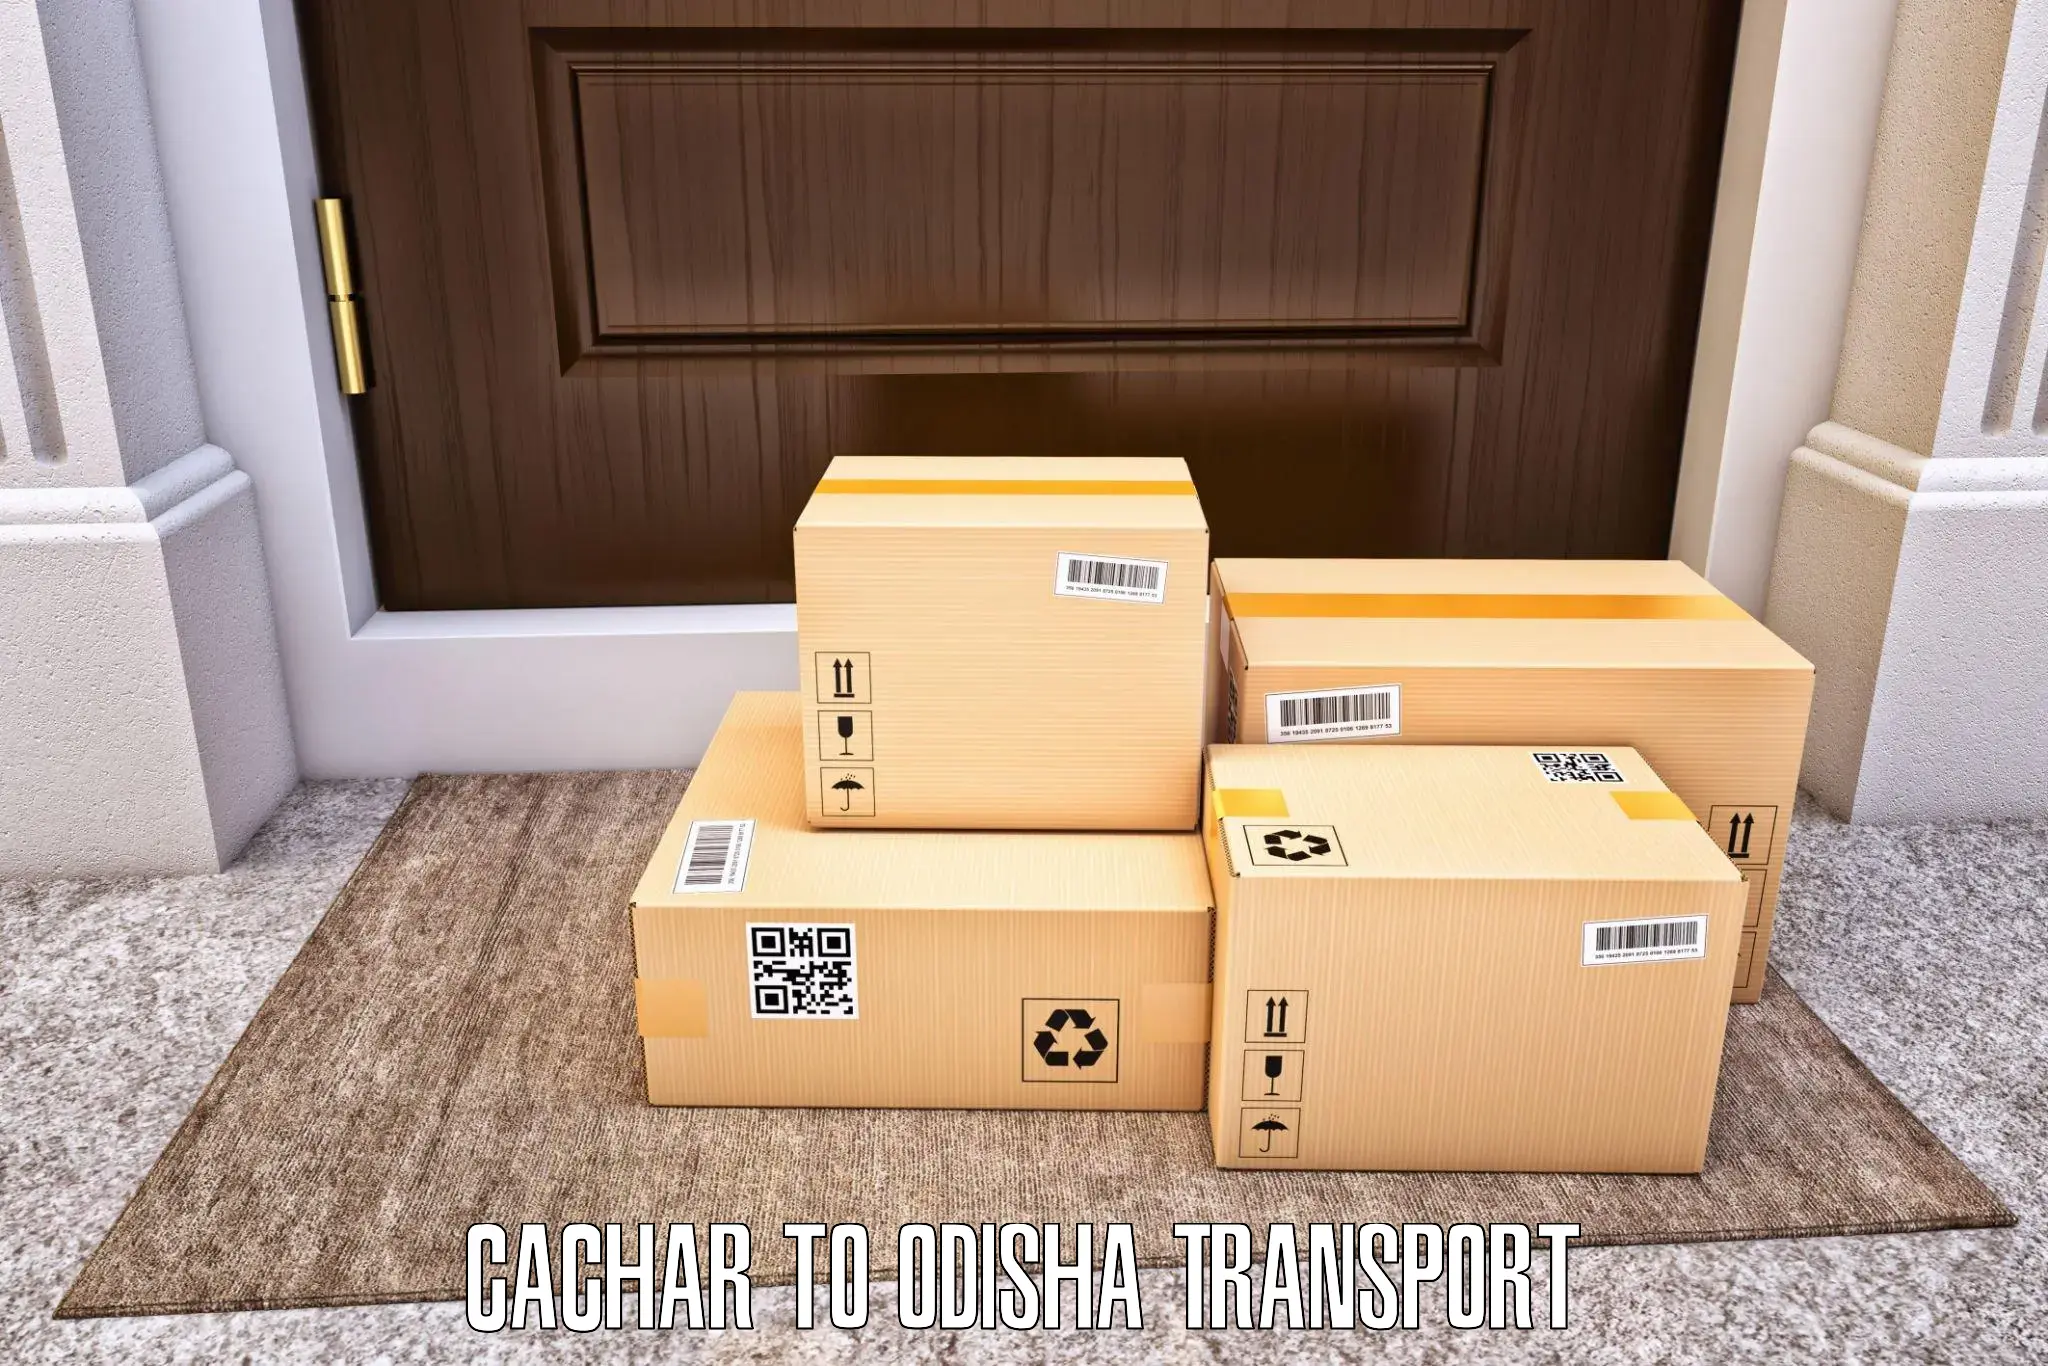 Shipping services Cachar to Deogarh Debagarh